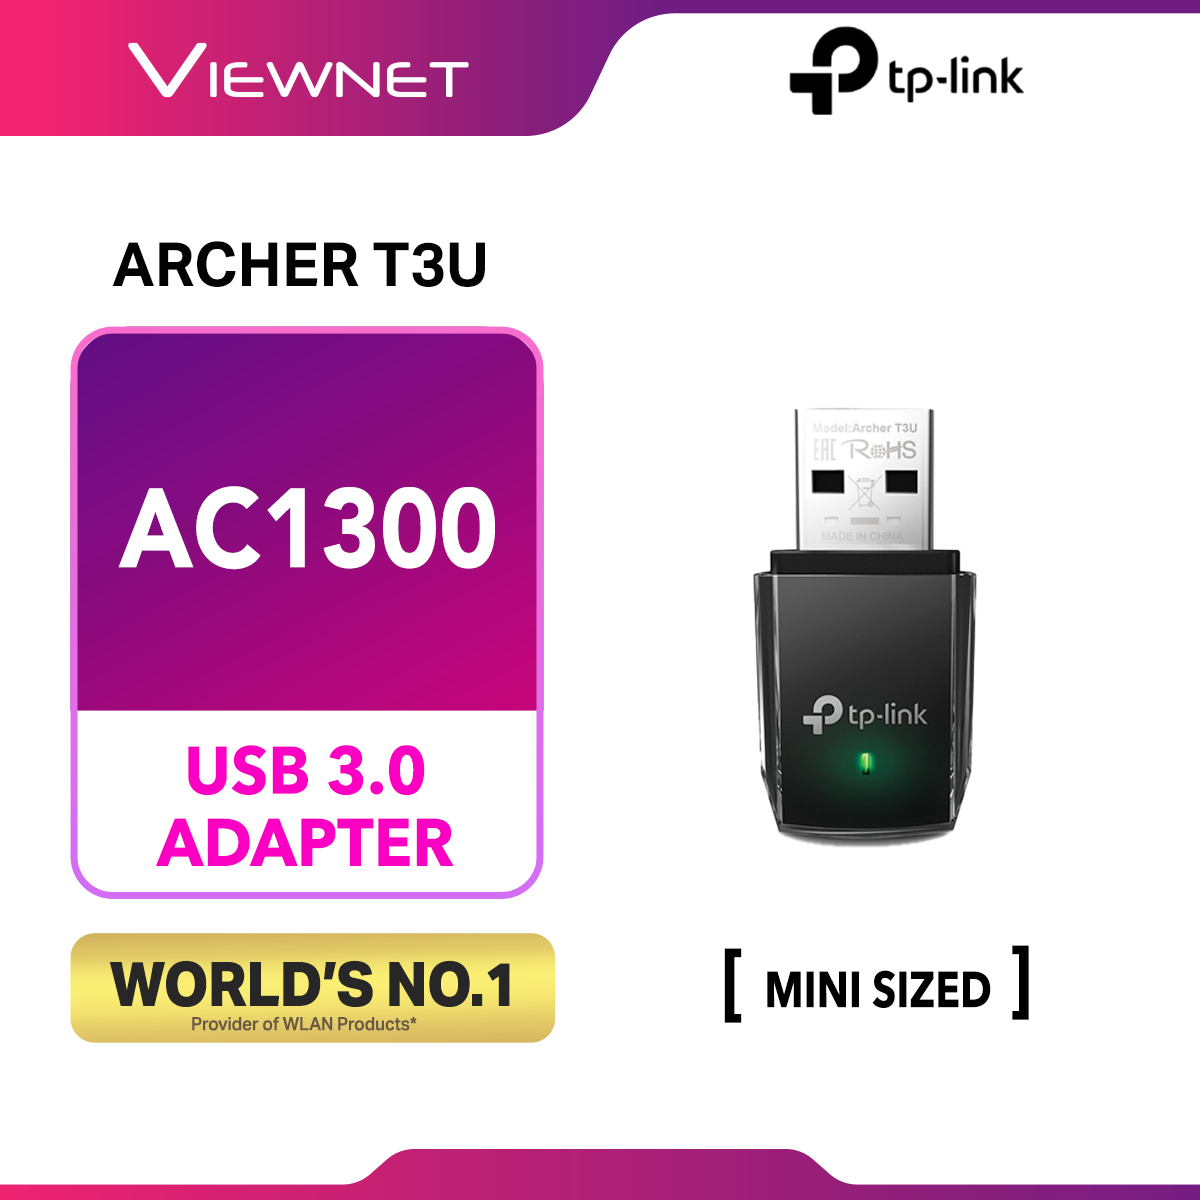 TP-LINK Archer T3U AC1300 Mini Wireless MU-MIMO USB WiFi Adapter Dual Band 5GHz + 2.4GHz